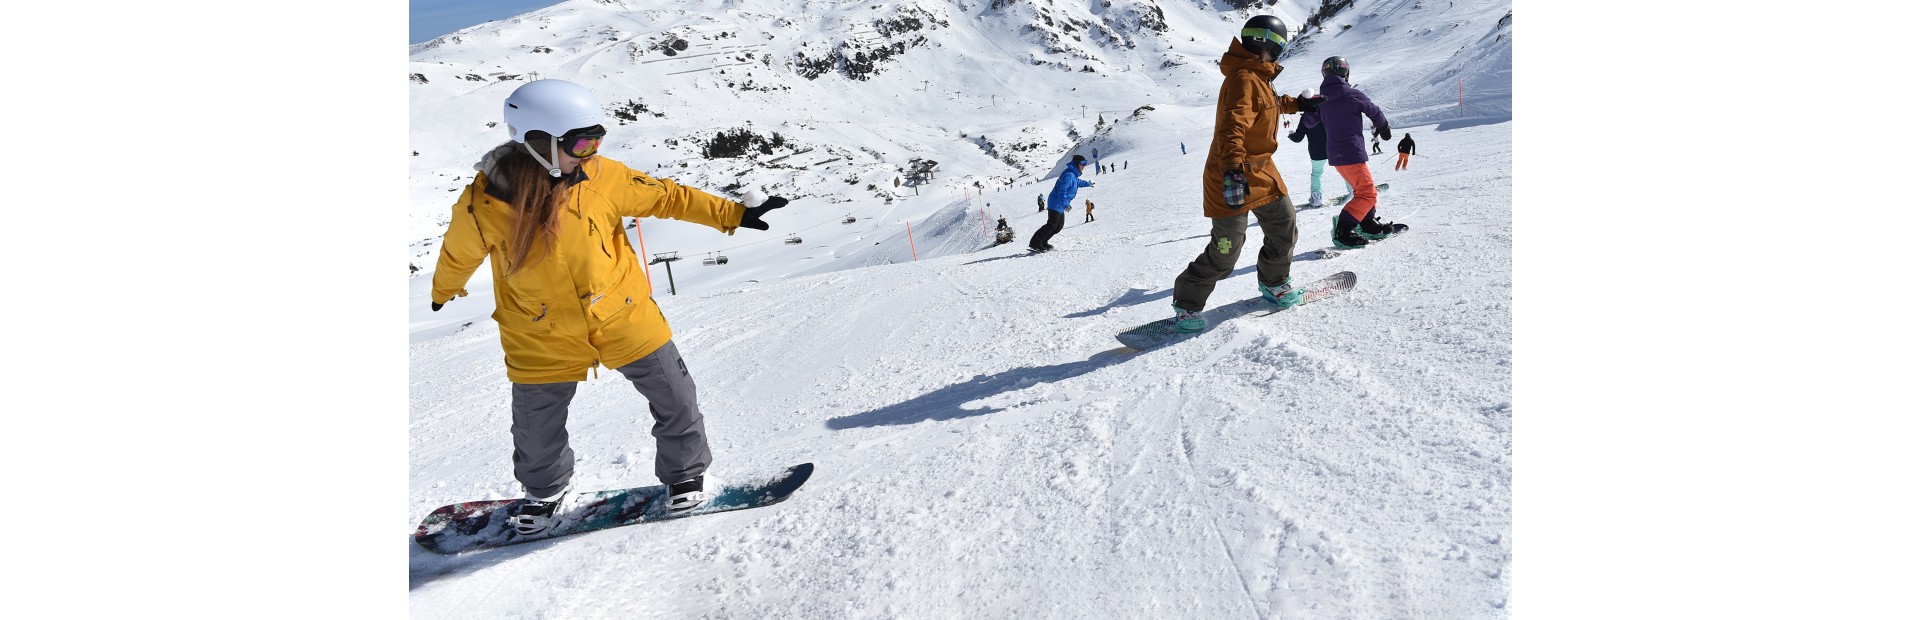 Snowboardschüler fahren hintereinander auf der Piste